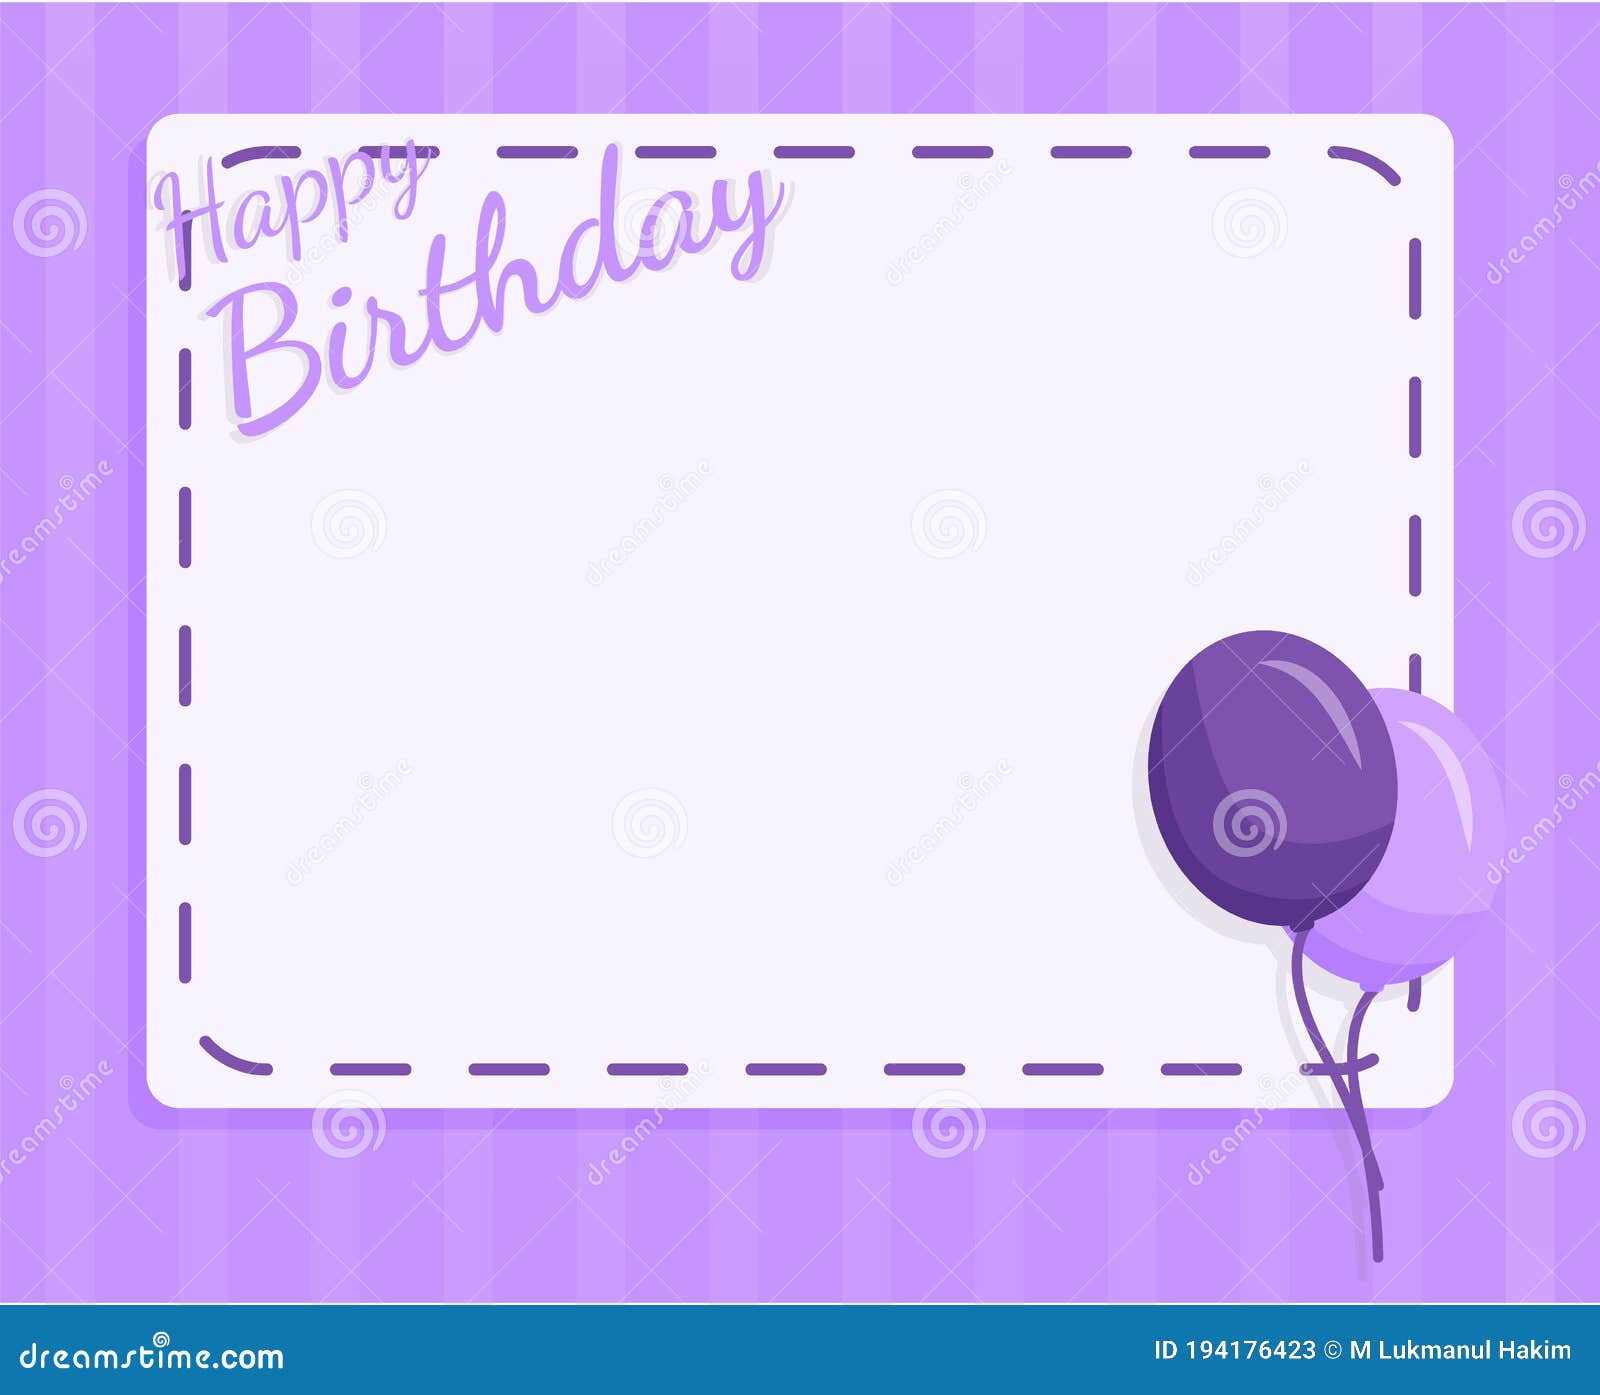 Thiết kế template chúc mừng sinh nhật màu tím sẽ là một sự lựa chọn tuyệt vời cho buổi tiệc của bạn. Với những thiết kế độc đáo và mang đậm phong cách, template chúc mừng sinh nhật màu tím giúp tăng thêm sự quan tâm và tình cảm đối với người nhận. Hãy sử dụng template chúc mừng sinh nhật màu tím để mang lại một buổi tiệc sinh nhật đầy ấn tượng và ý nghĩa.